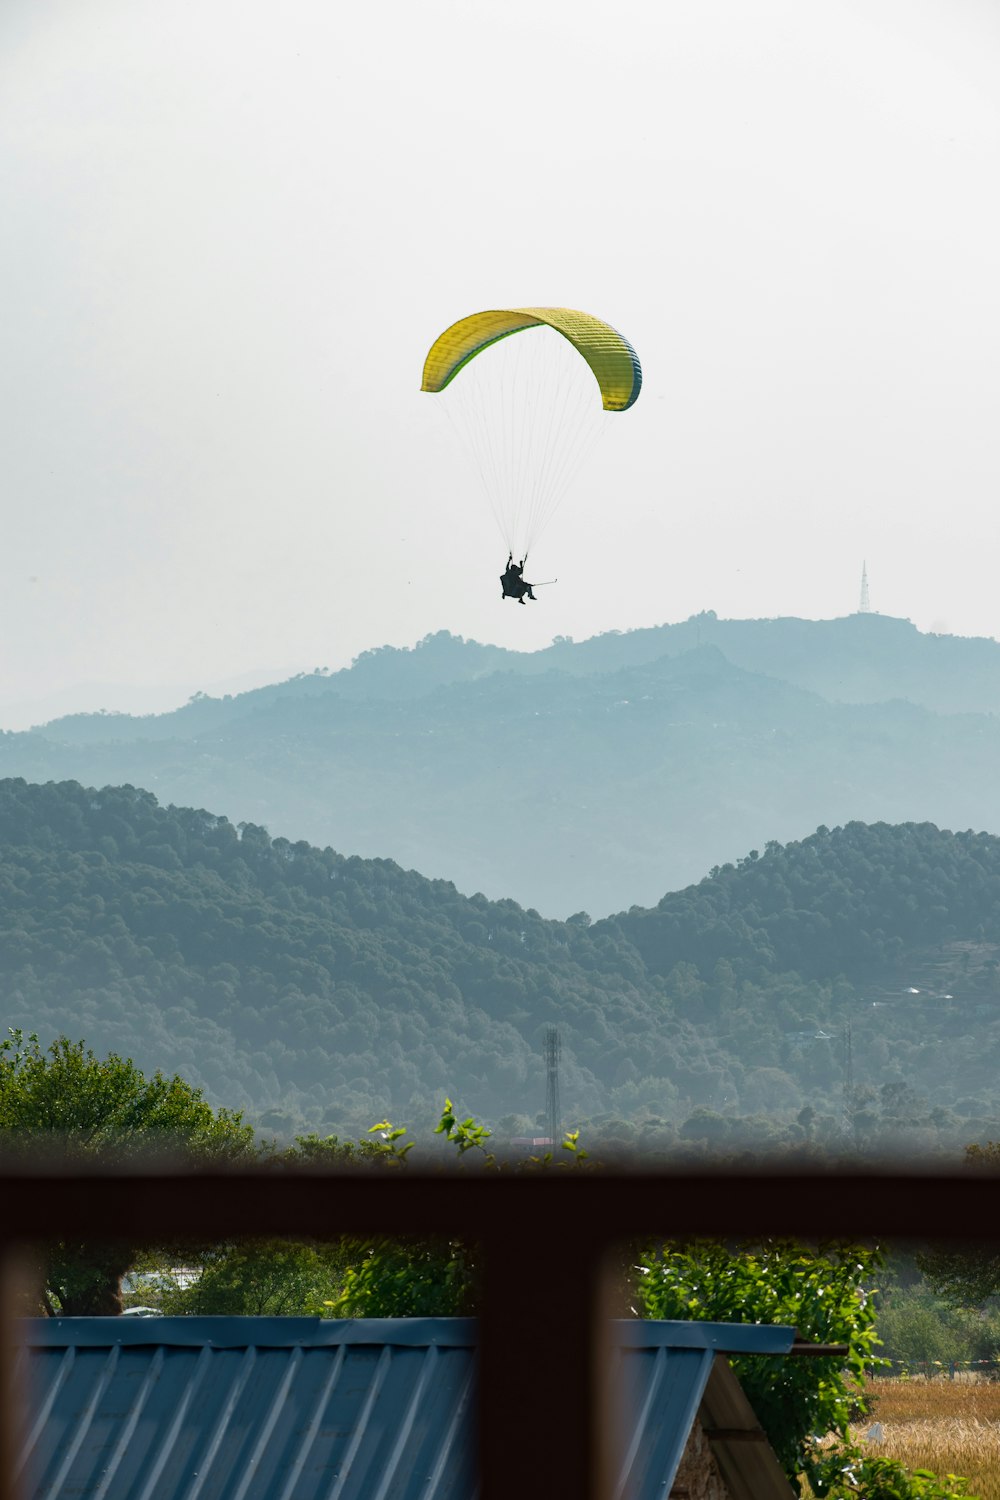 personne chevauchant un parachute jaune au-dessus de montagnes vertes pendant la journée